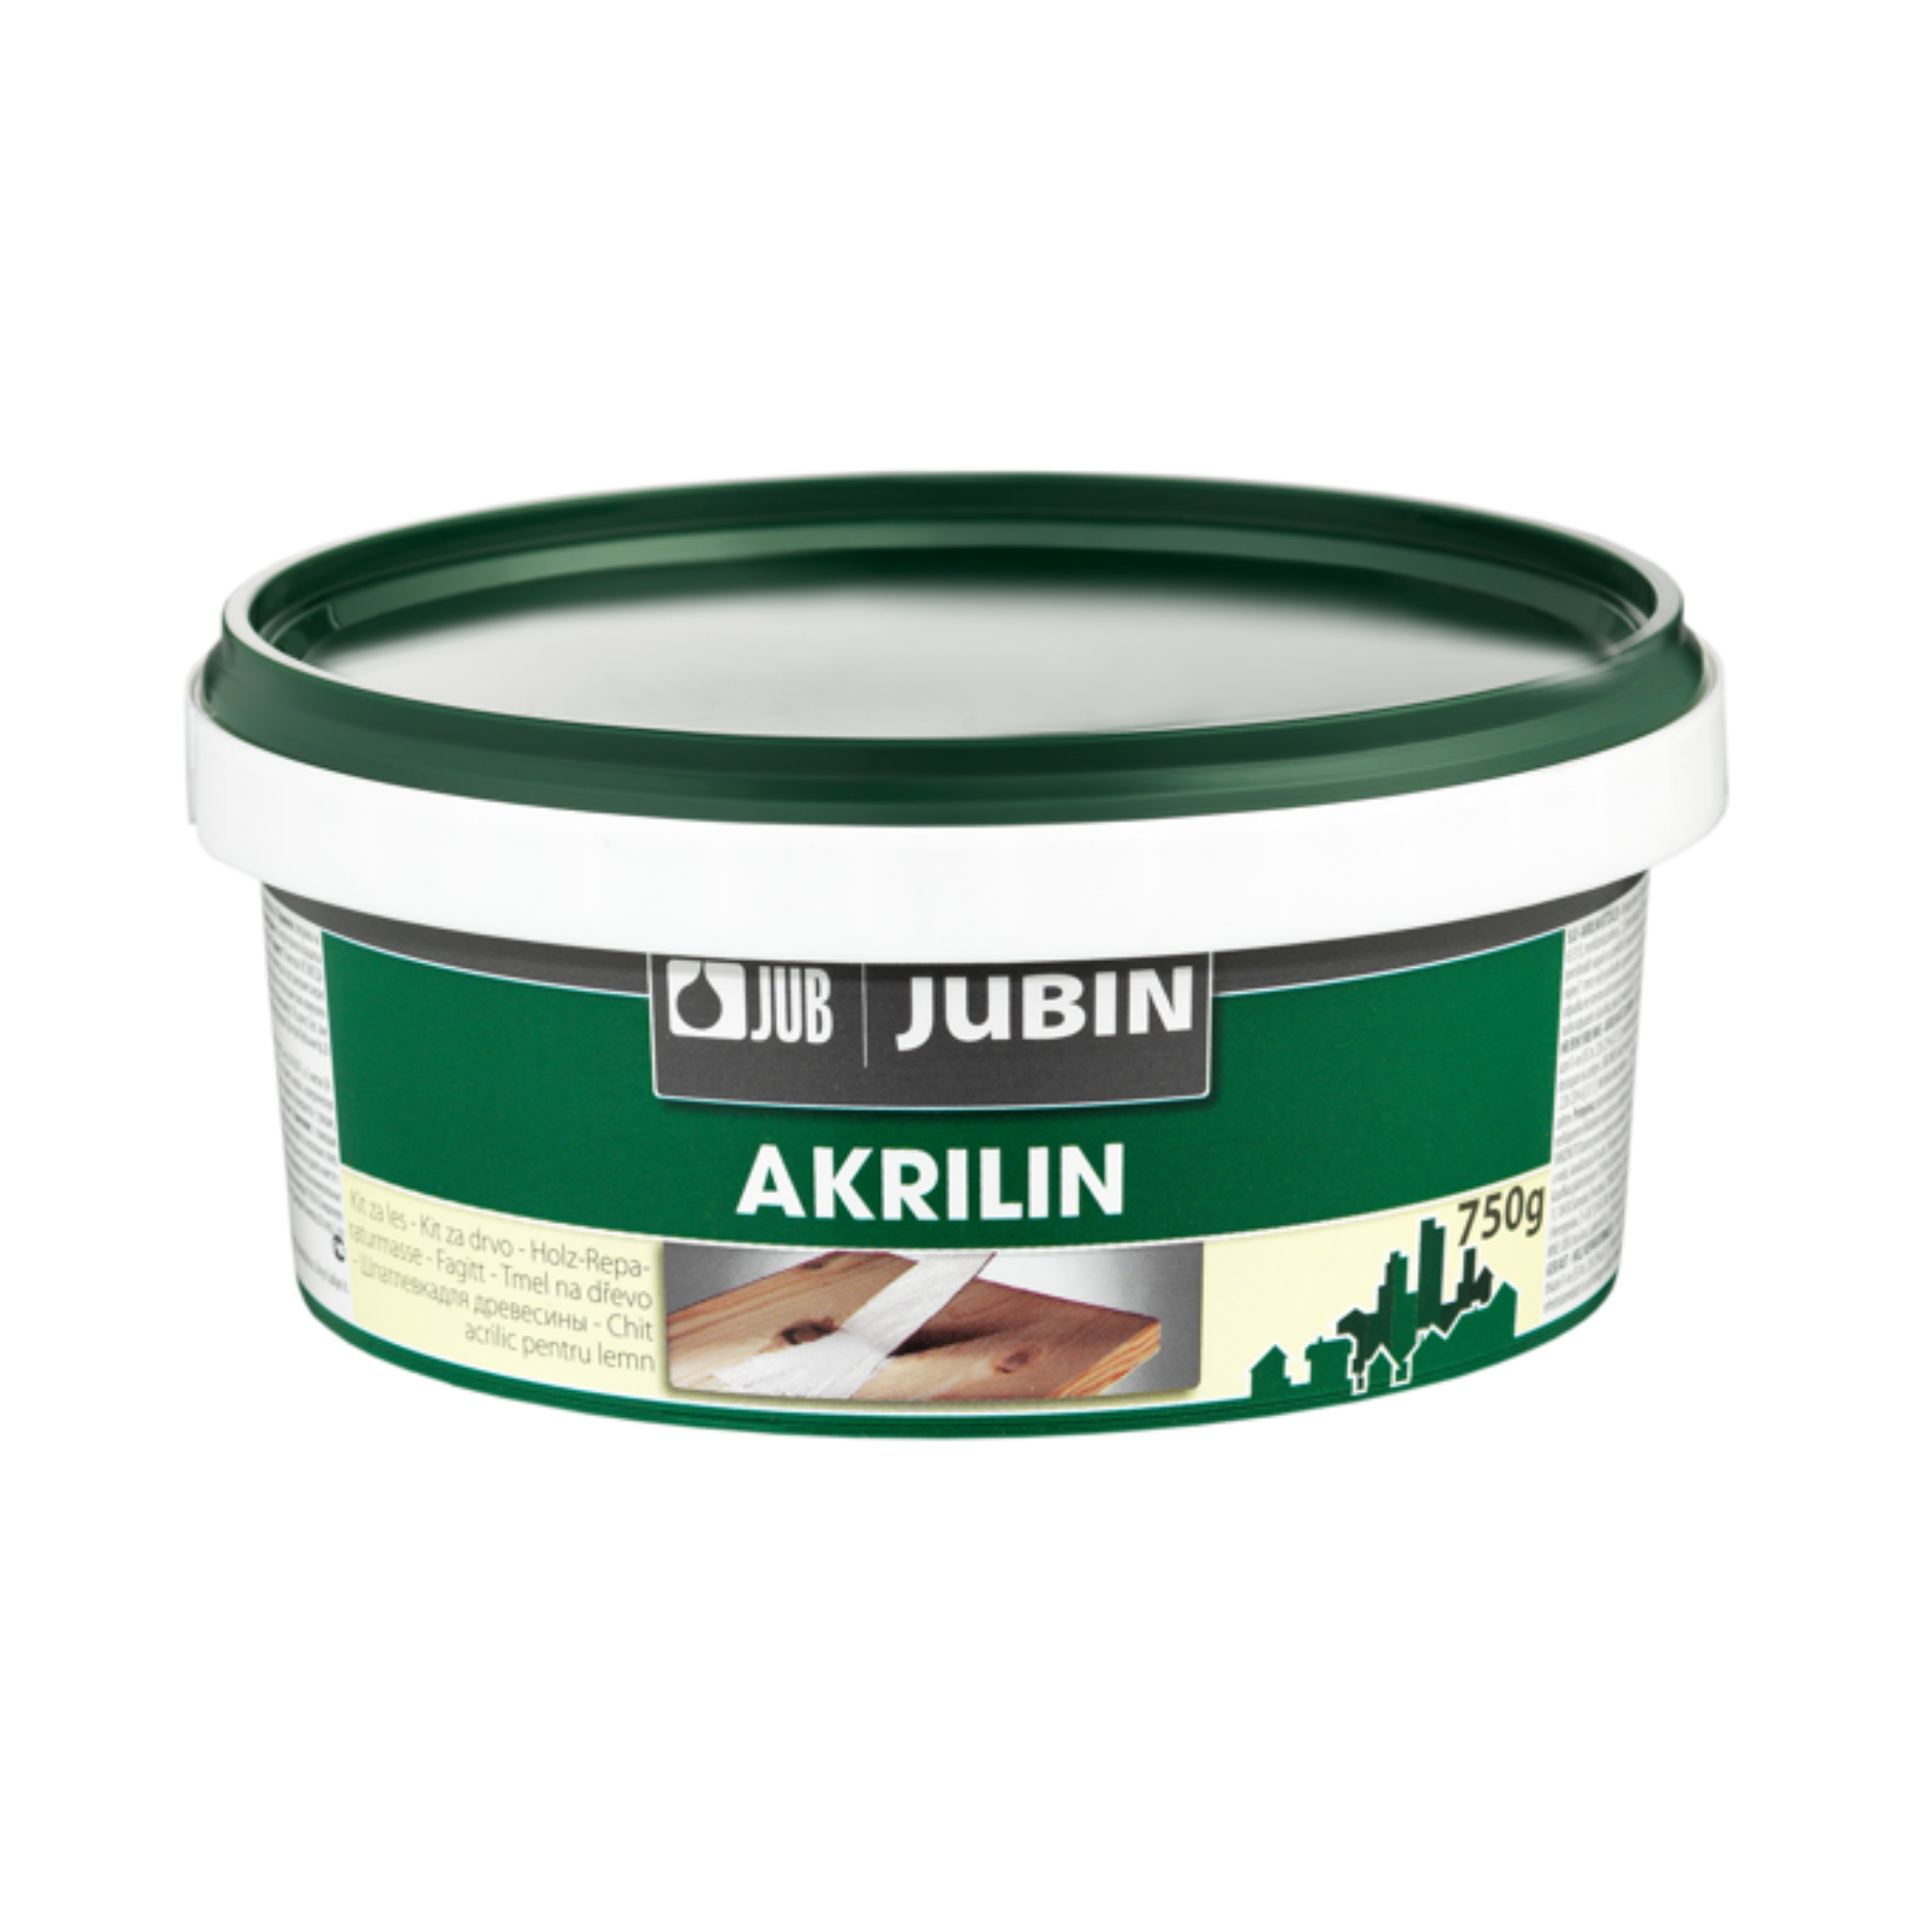 JUB JUBIN Akrilin akrylátový tmel na drevo 750 g